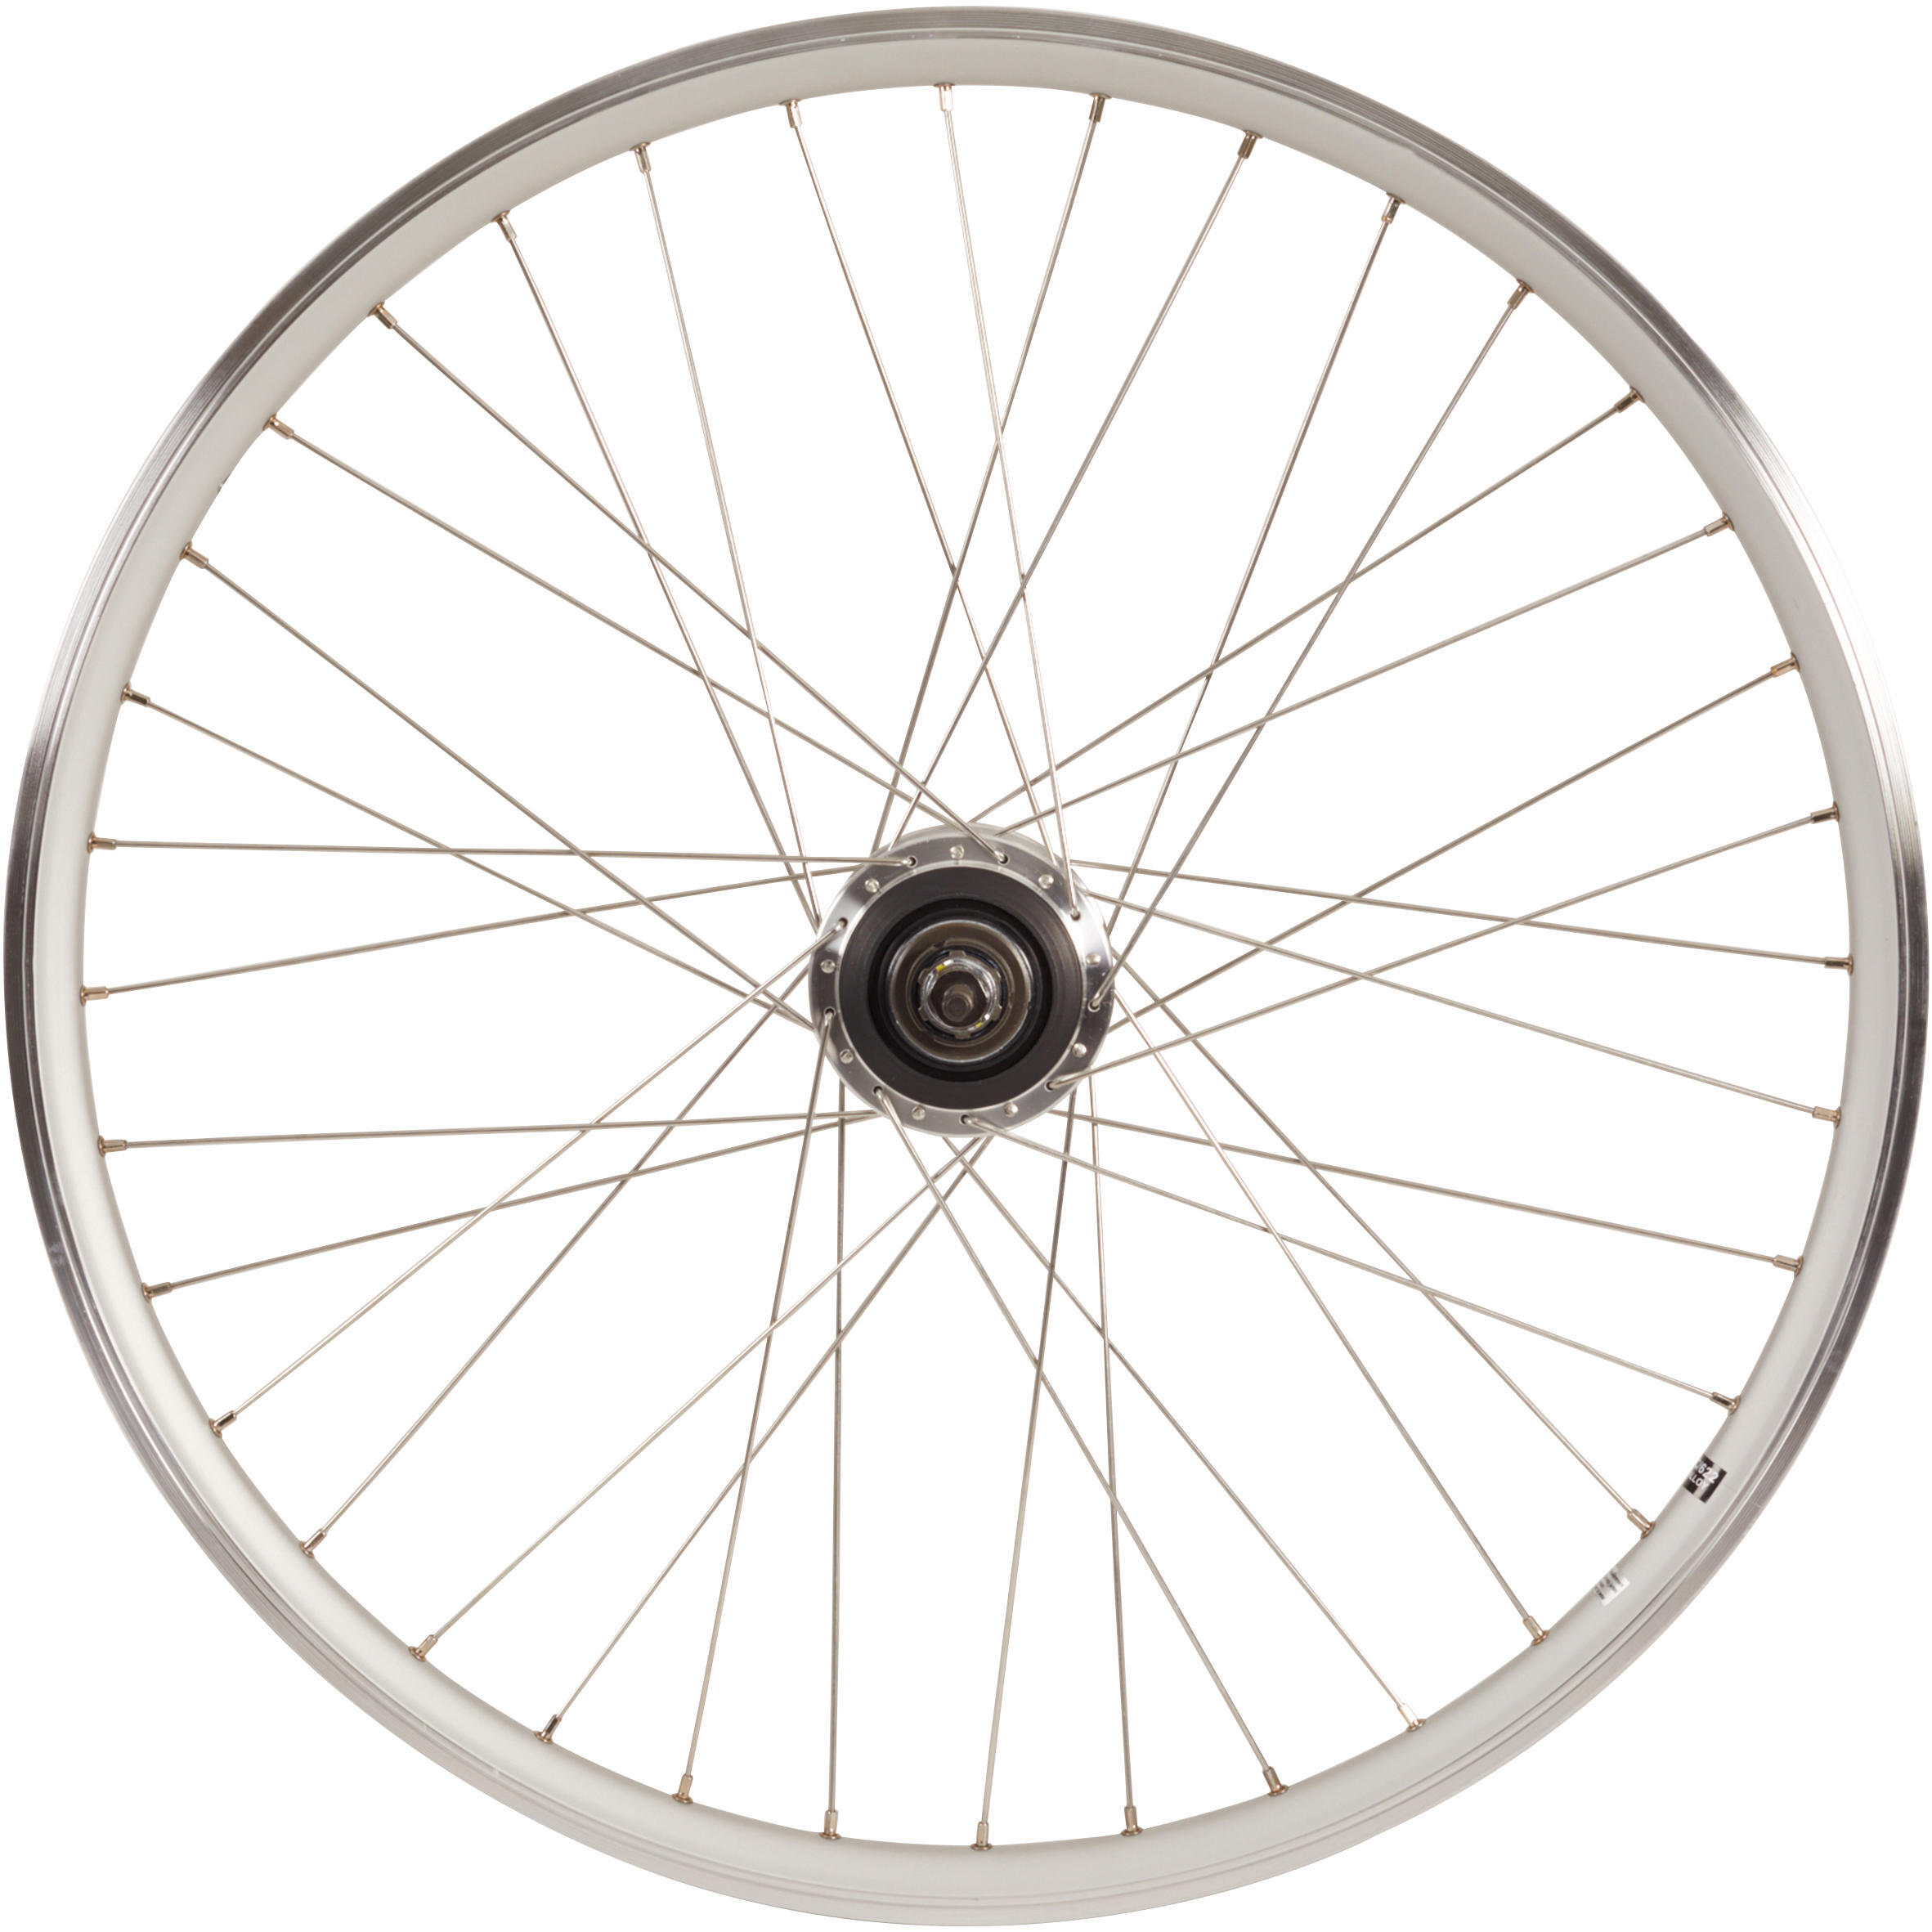 Заднее колесо крыльчатки 28-дюймовый обод для городского велосипеда с двойными стенками Nexus7 серебристый Elops 920, серебро чехол mypads e vano для maxcom ms551